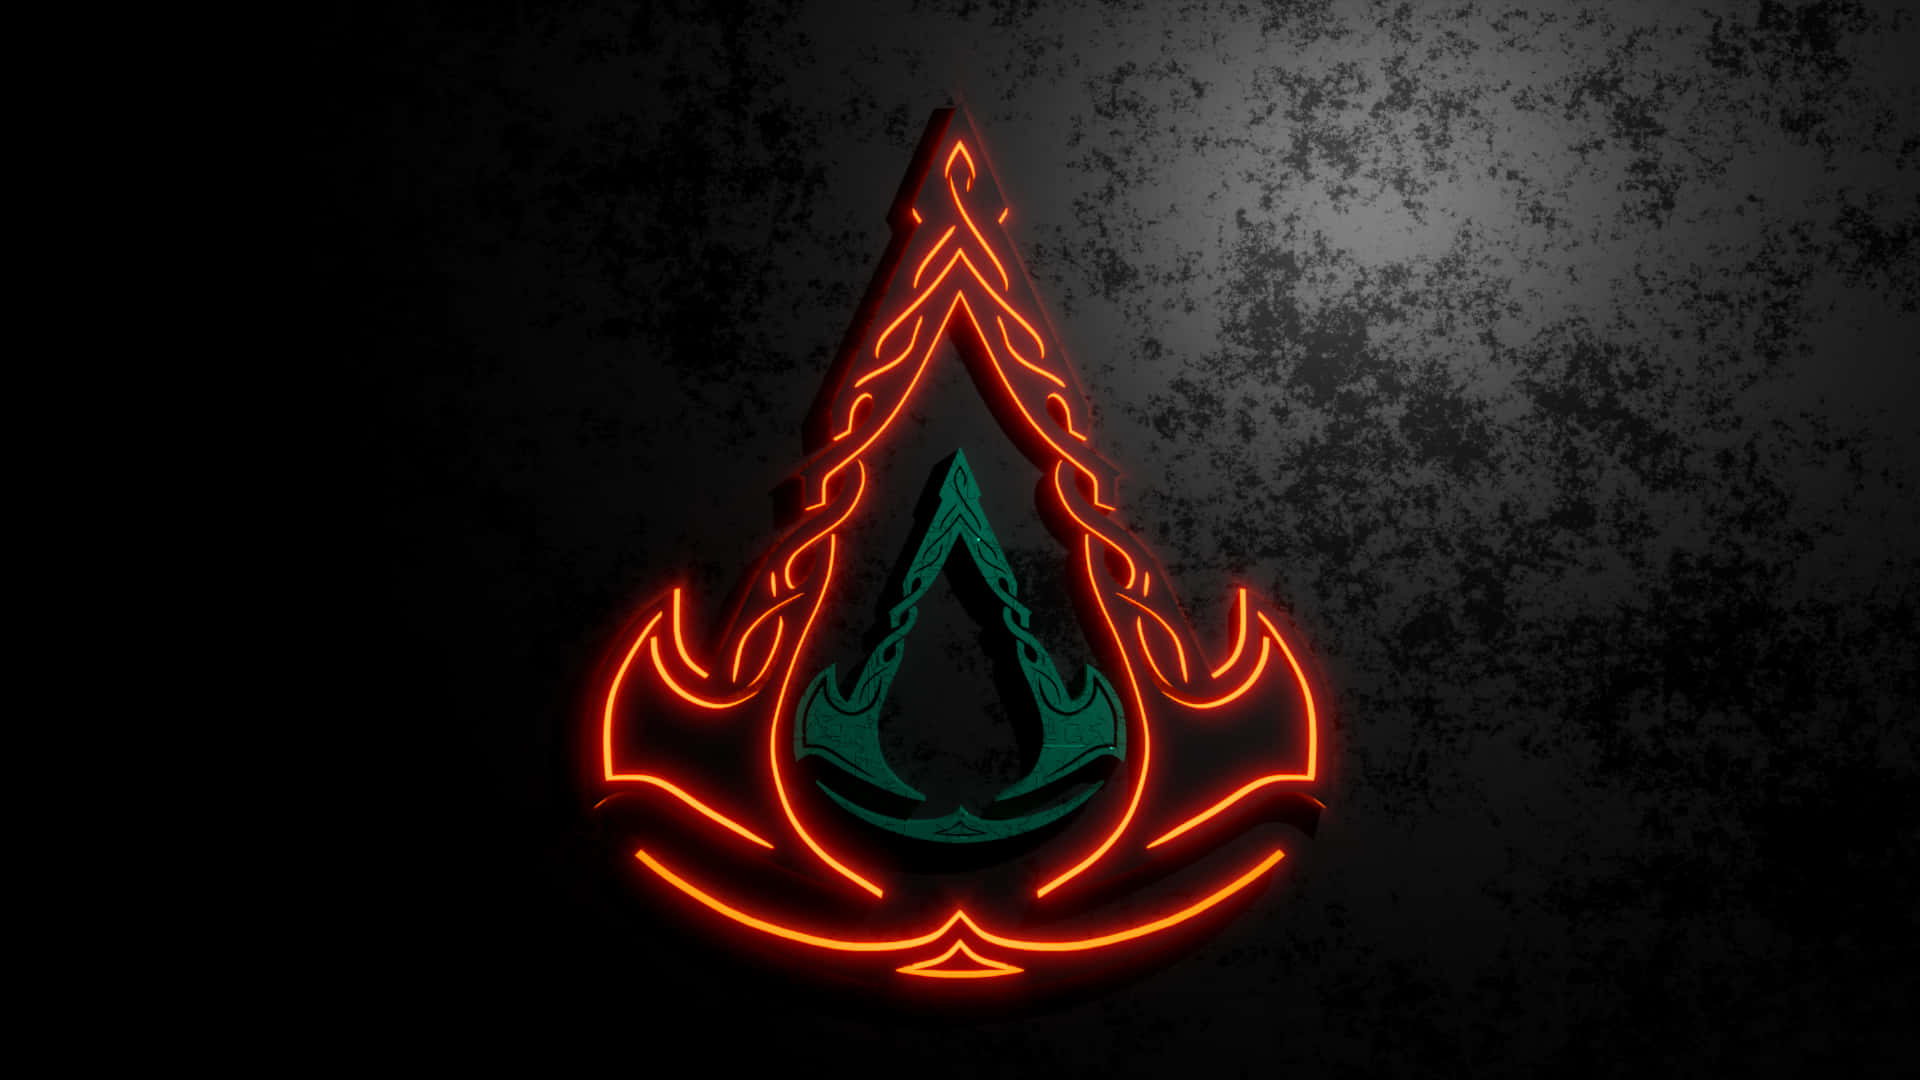 Bakgrundsbildför Bästa Assassin's Creed Odyssey-logotypen